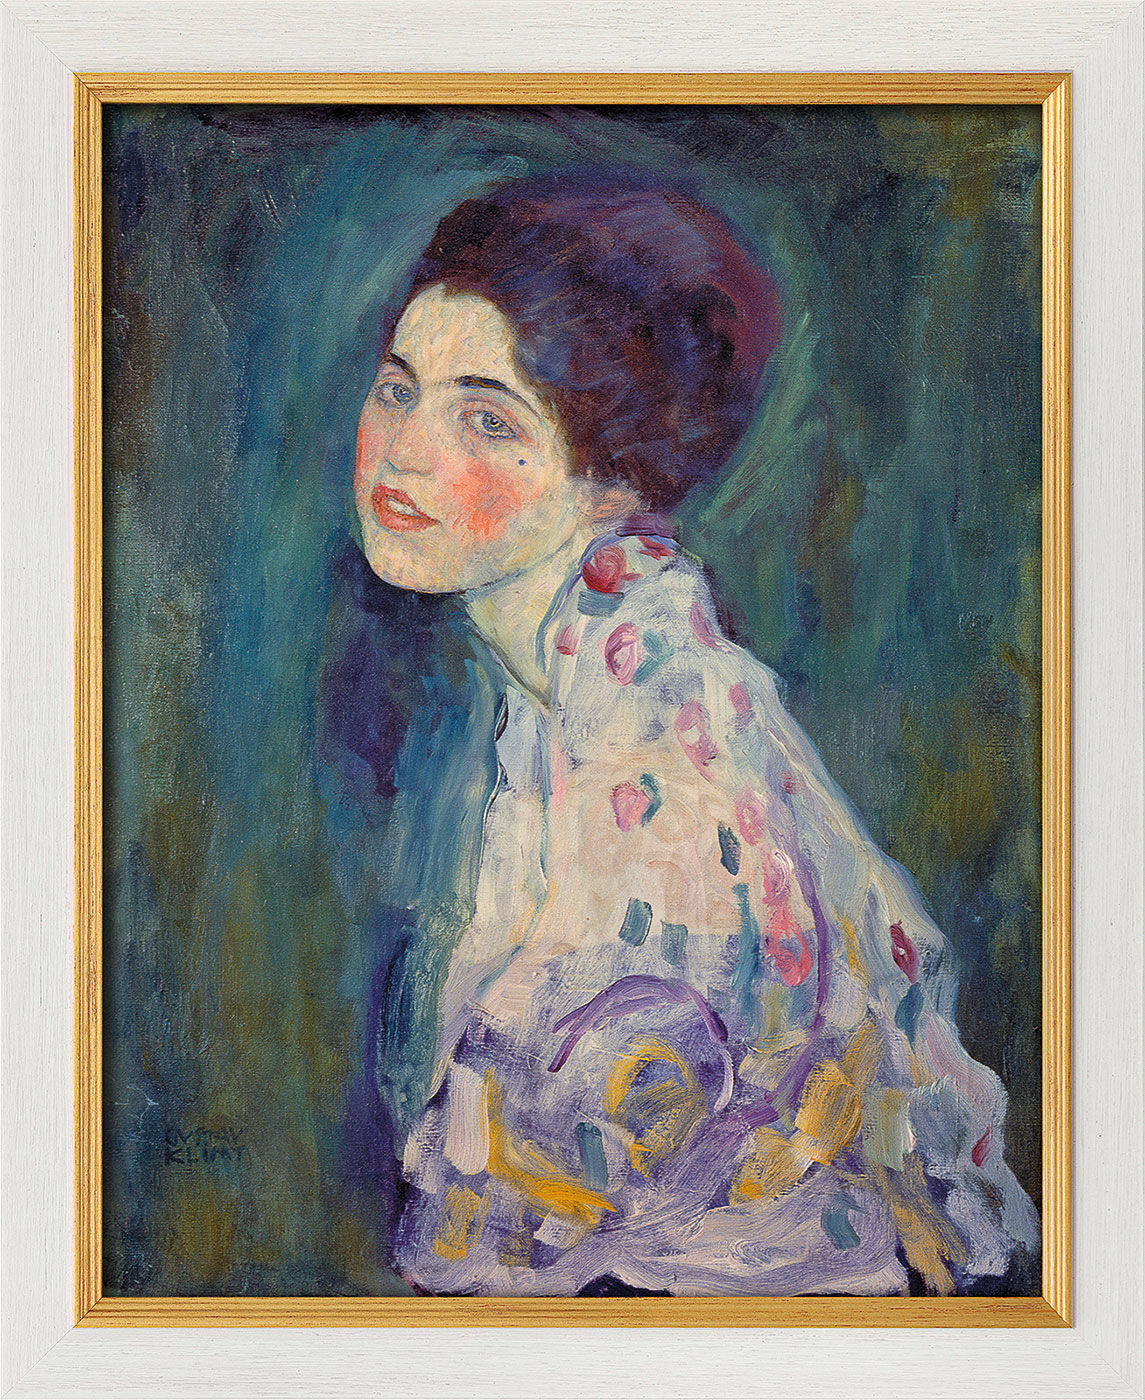 Beeld "Portret van een dame" (1916-18), ingelijst von Gustav Klimt